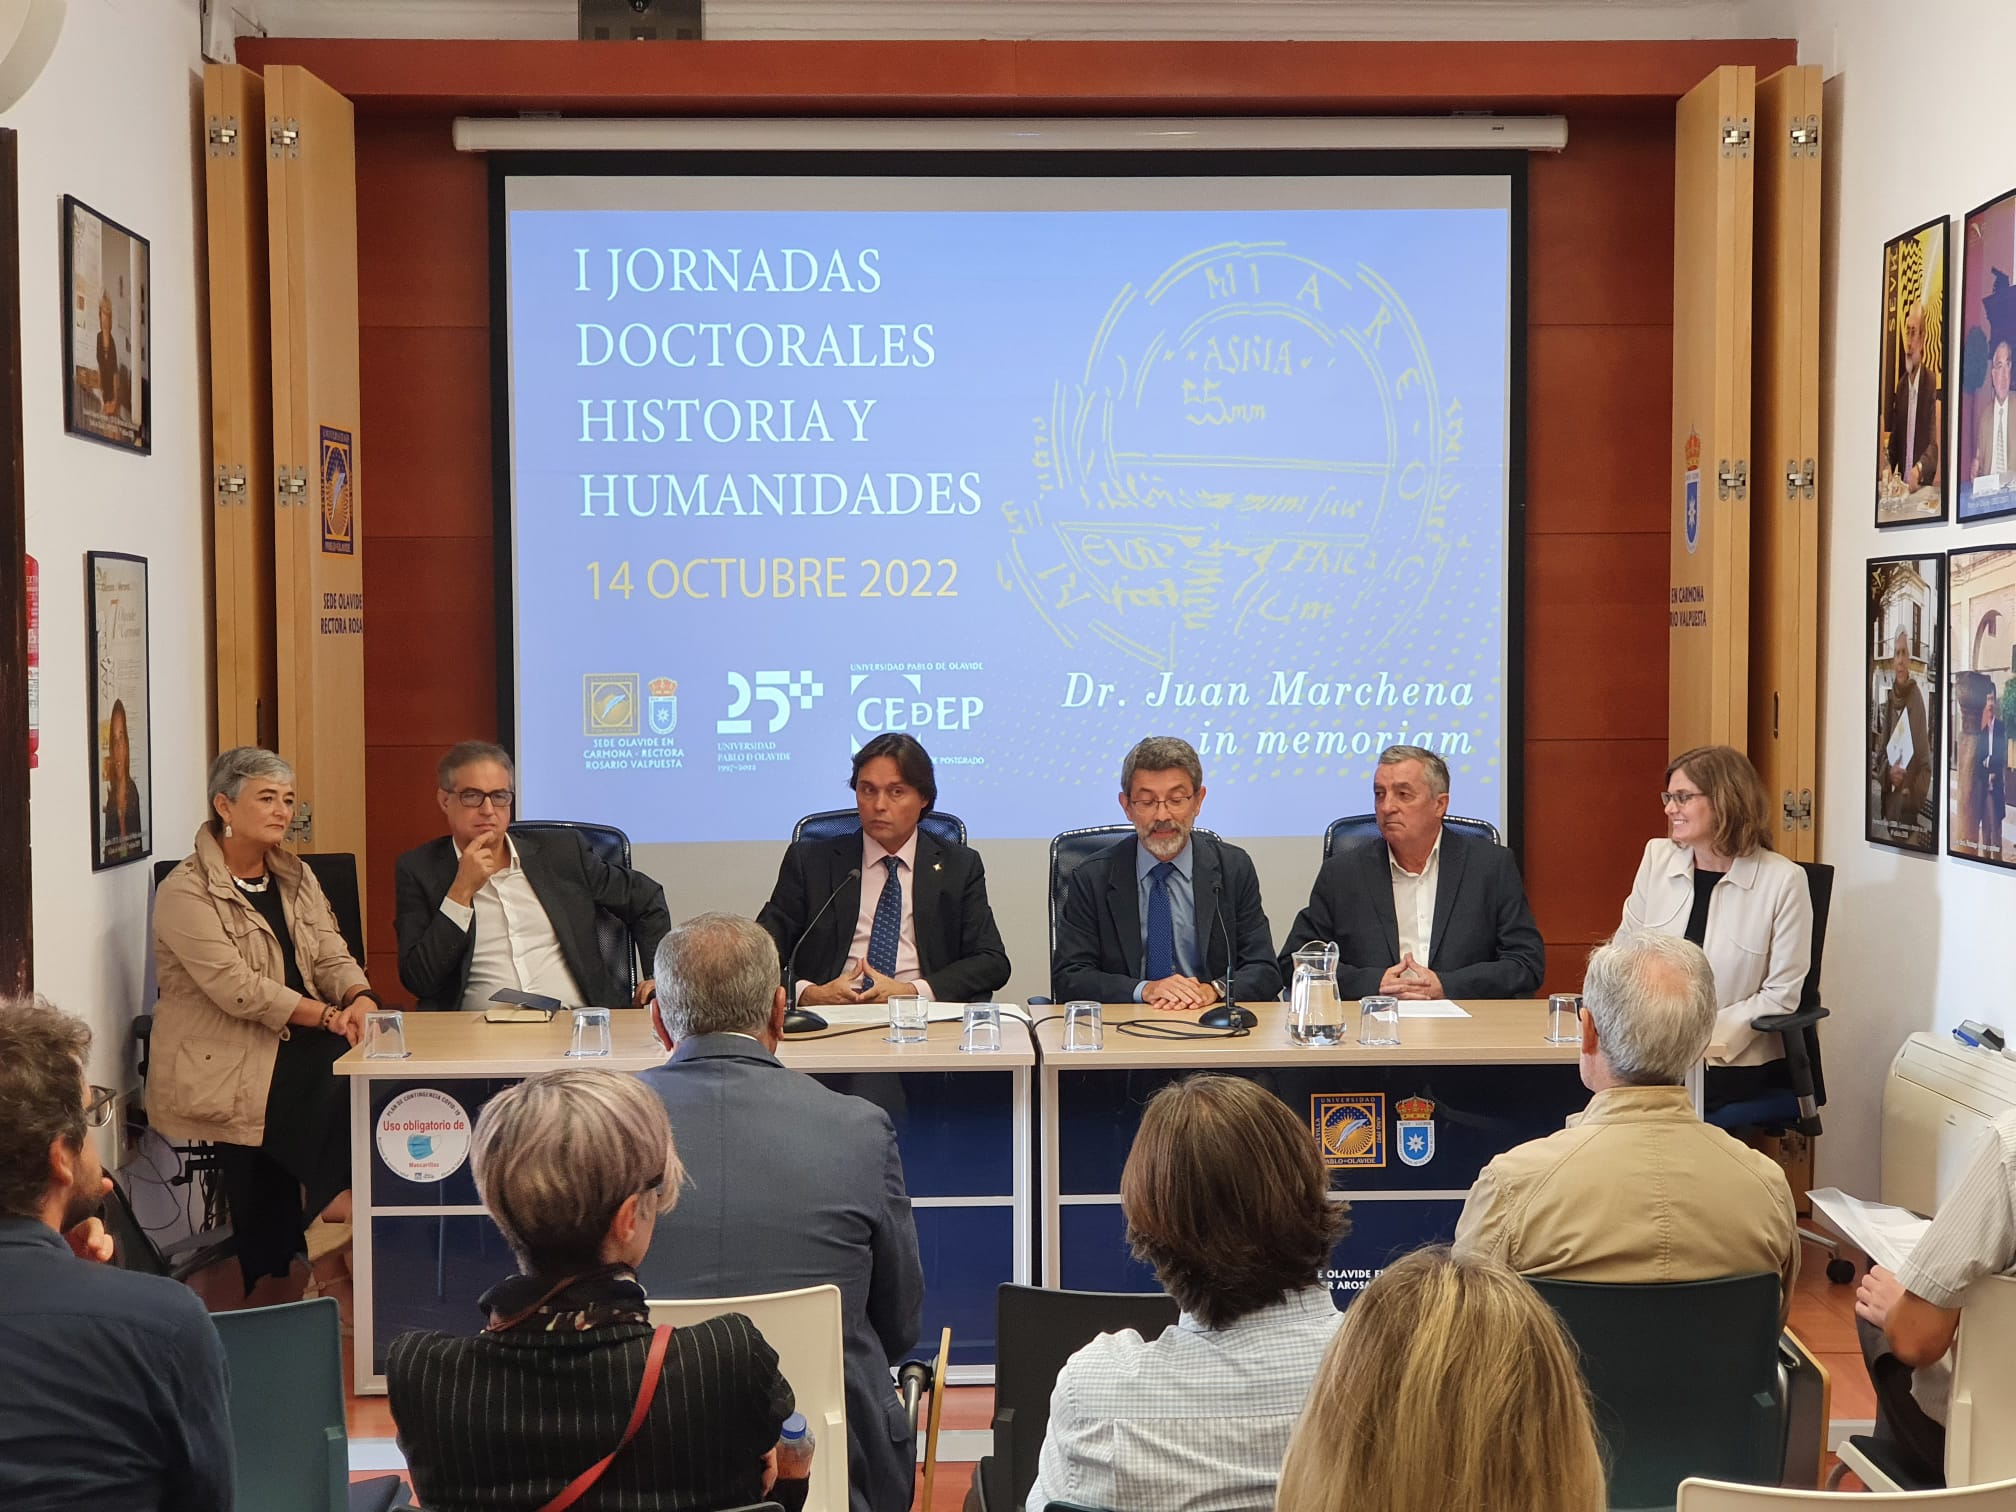 El rector inaugura en la sede de Carmona las I Jornadas Doctorales sobre Historia y Humanidades